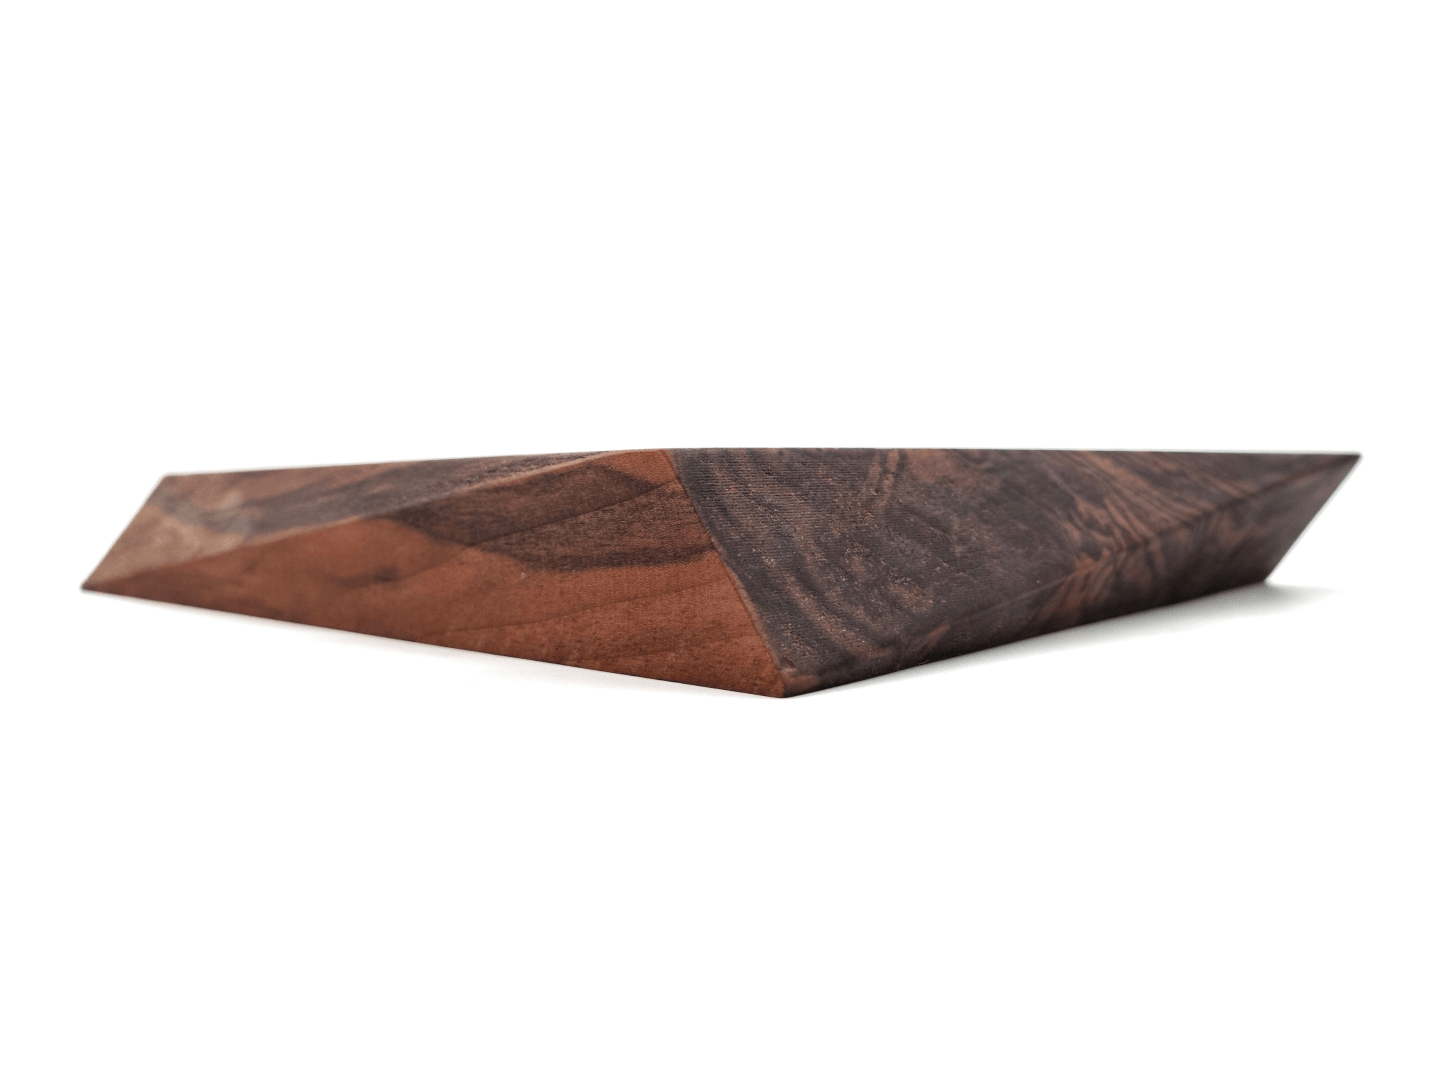 Walnut Thick Edge Cutting Board | Minimalist Design